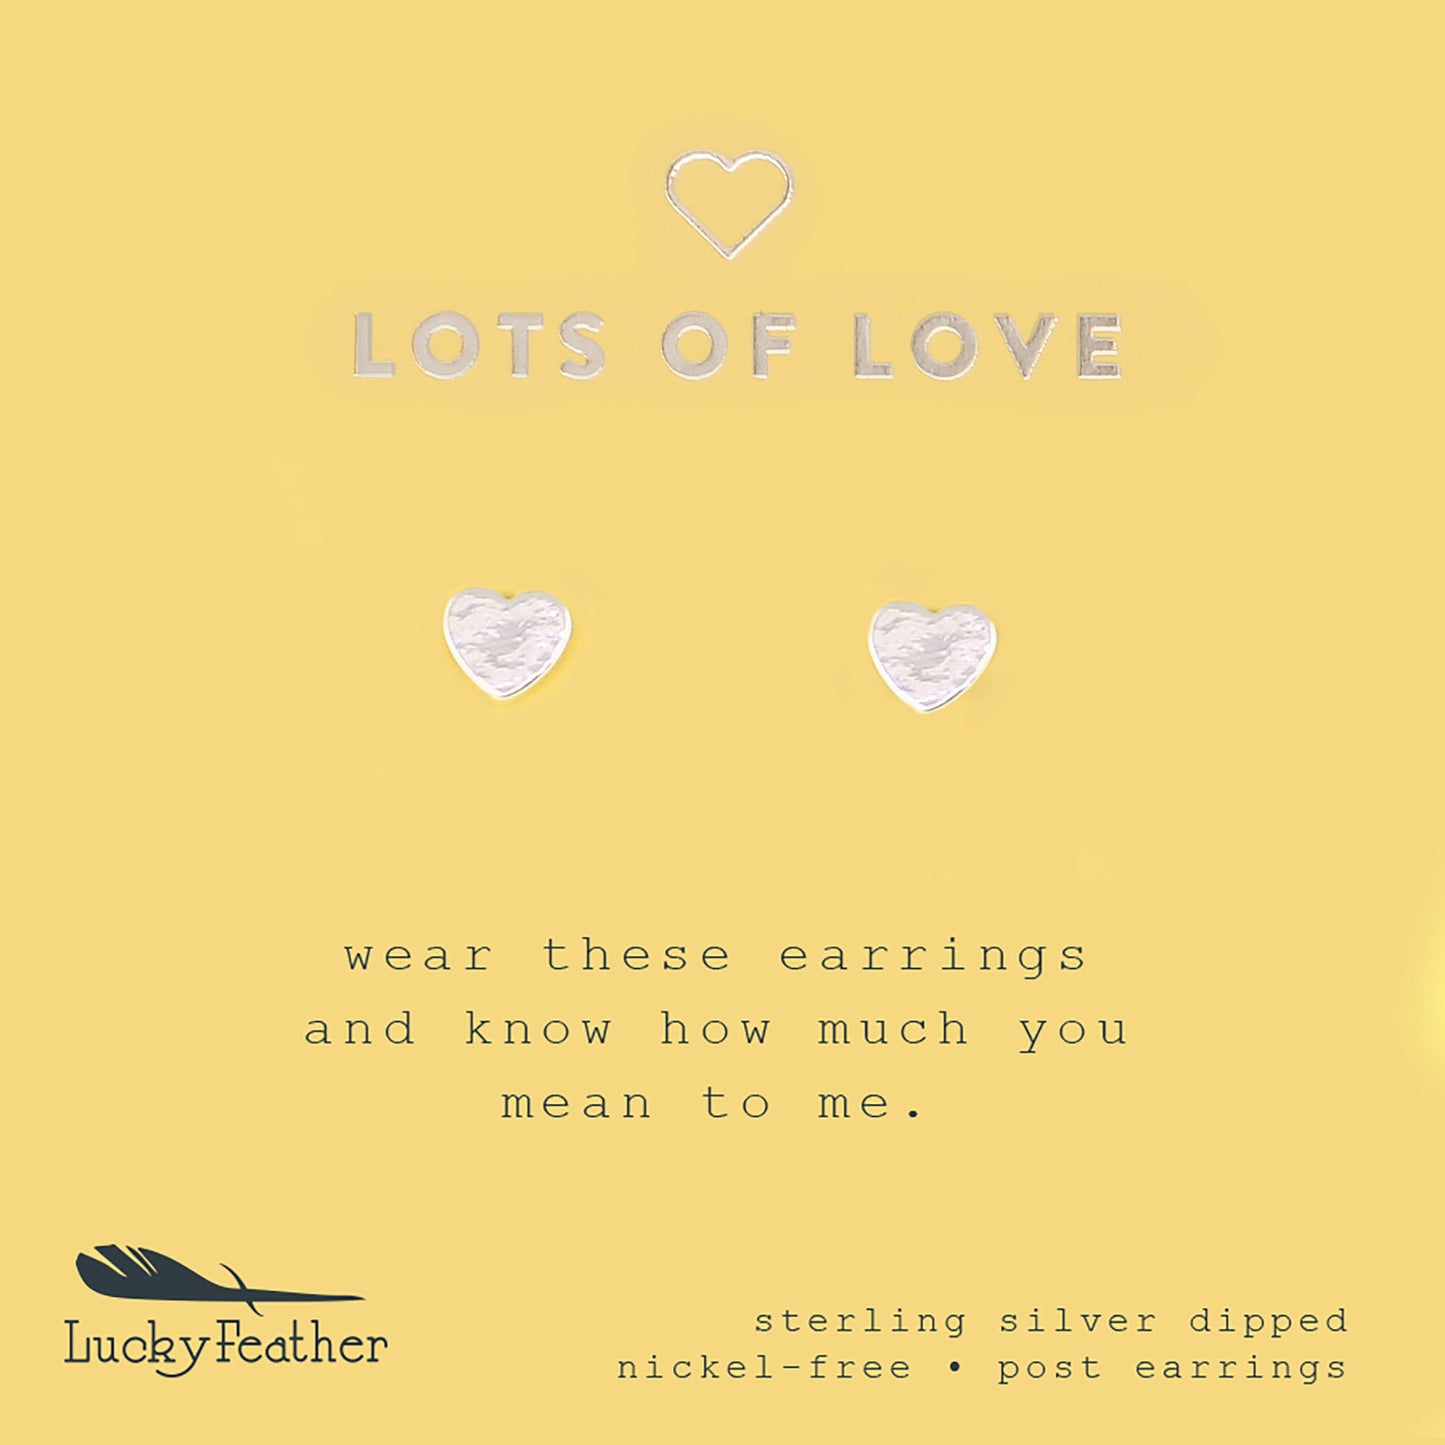 Love You Lots - Silver Heart Earrings